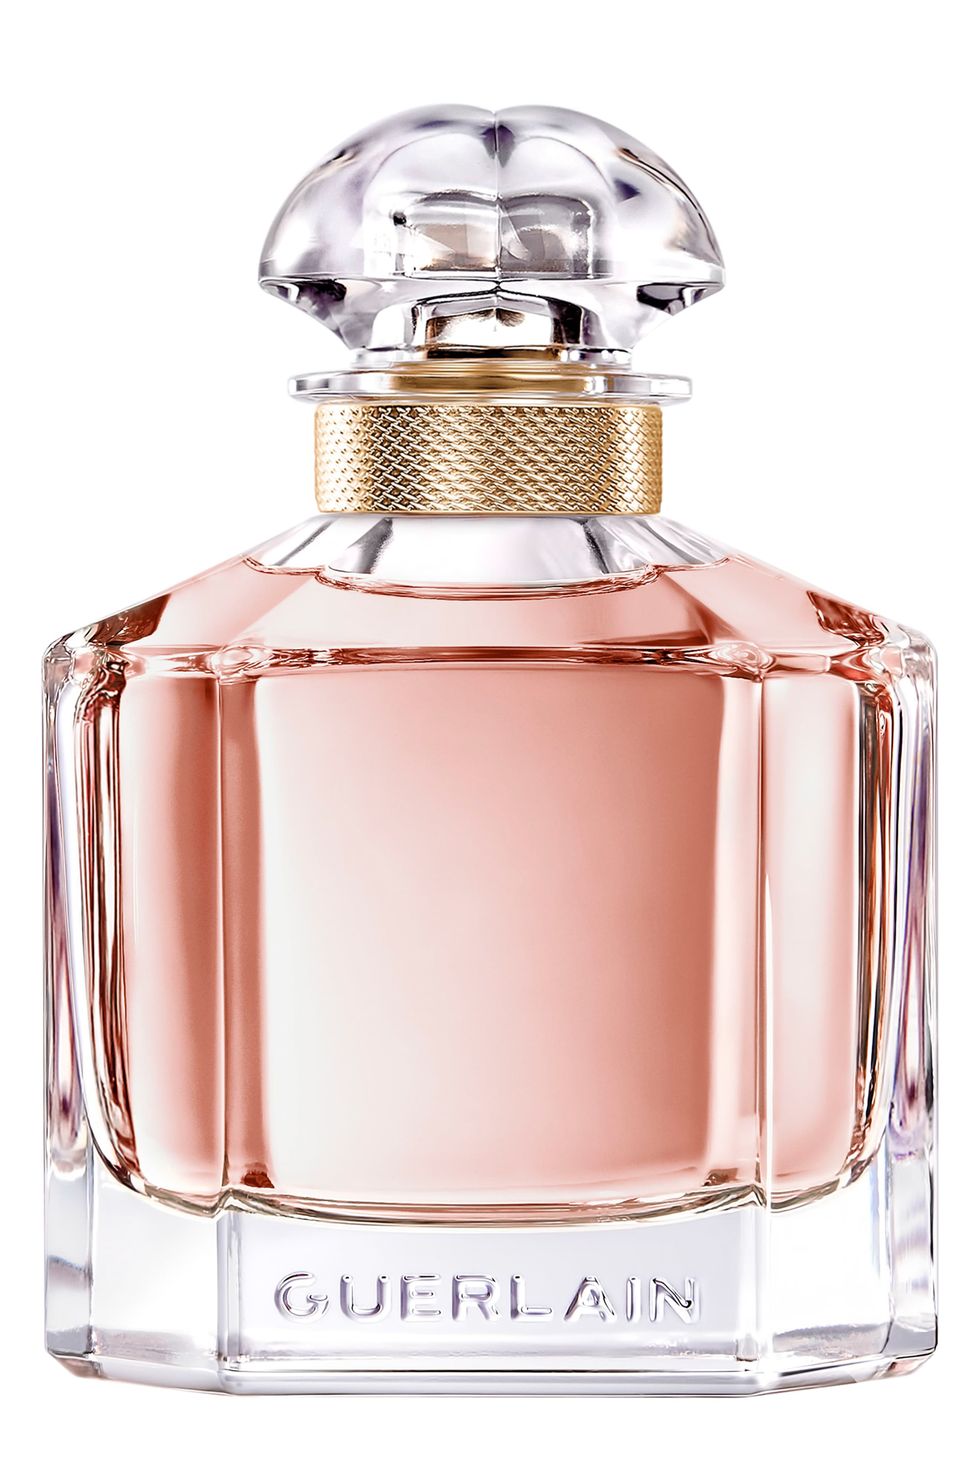 Order top 10 ladies perfumes online!